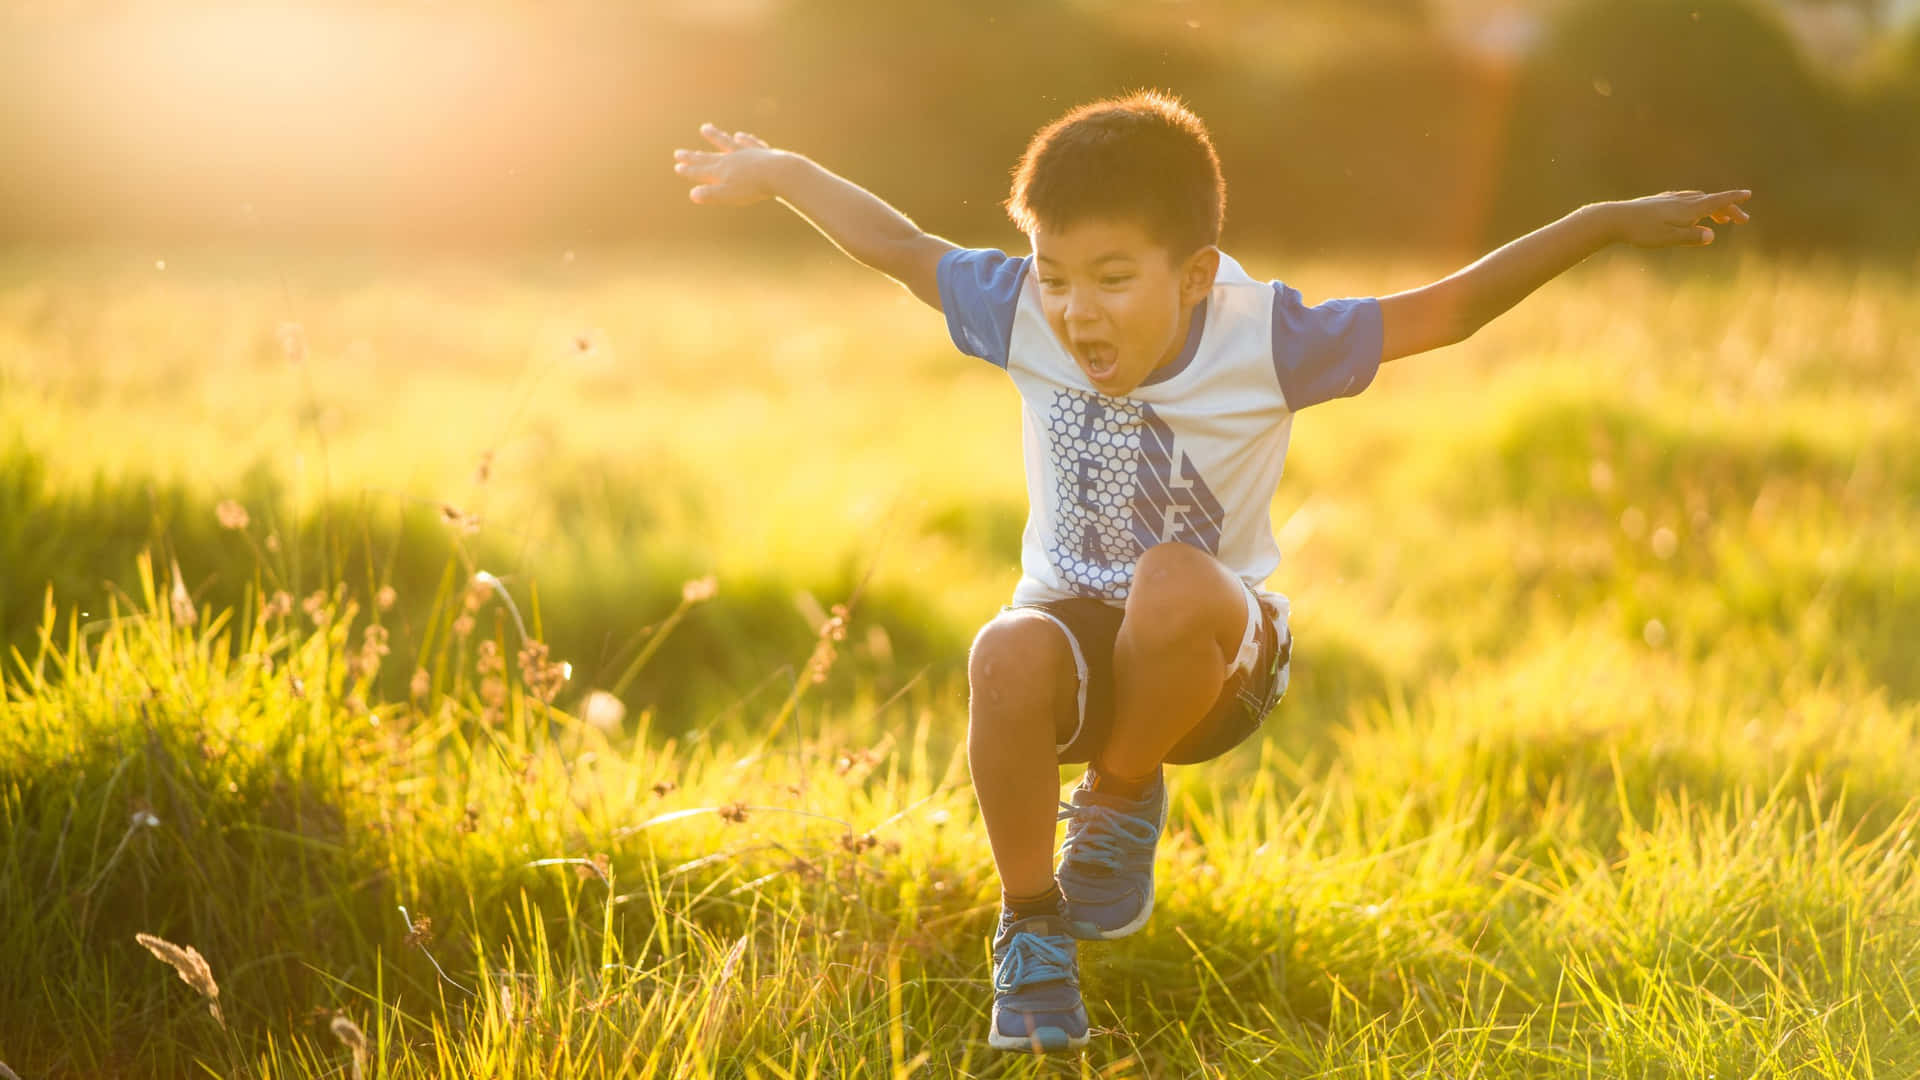 Joyful Boy Playing In Sunlit Field.jpg Wallpaper